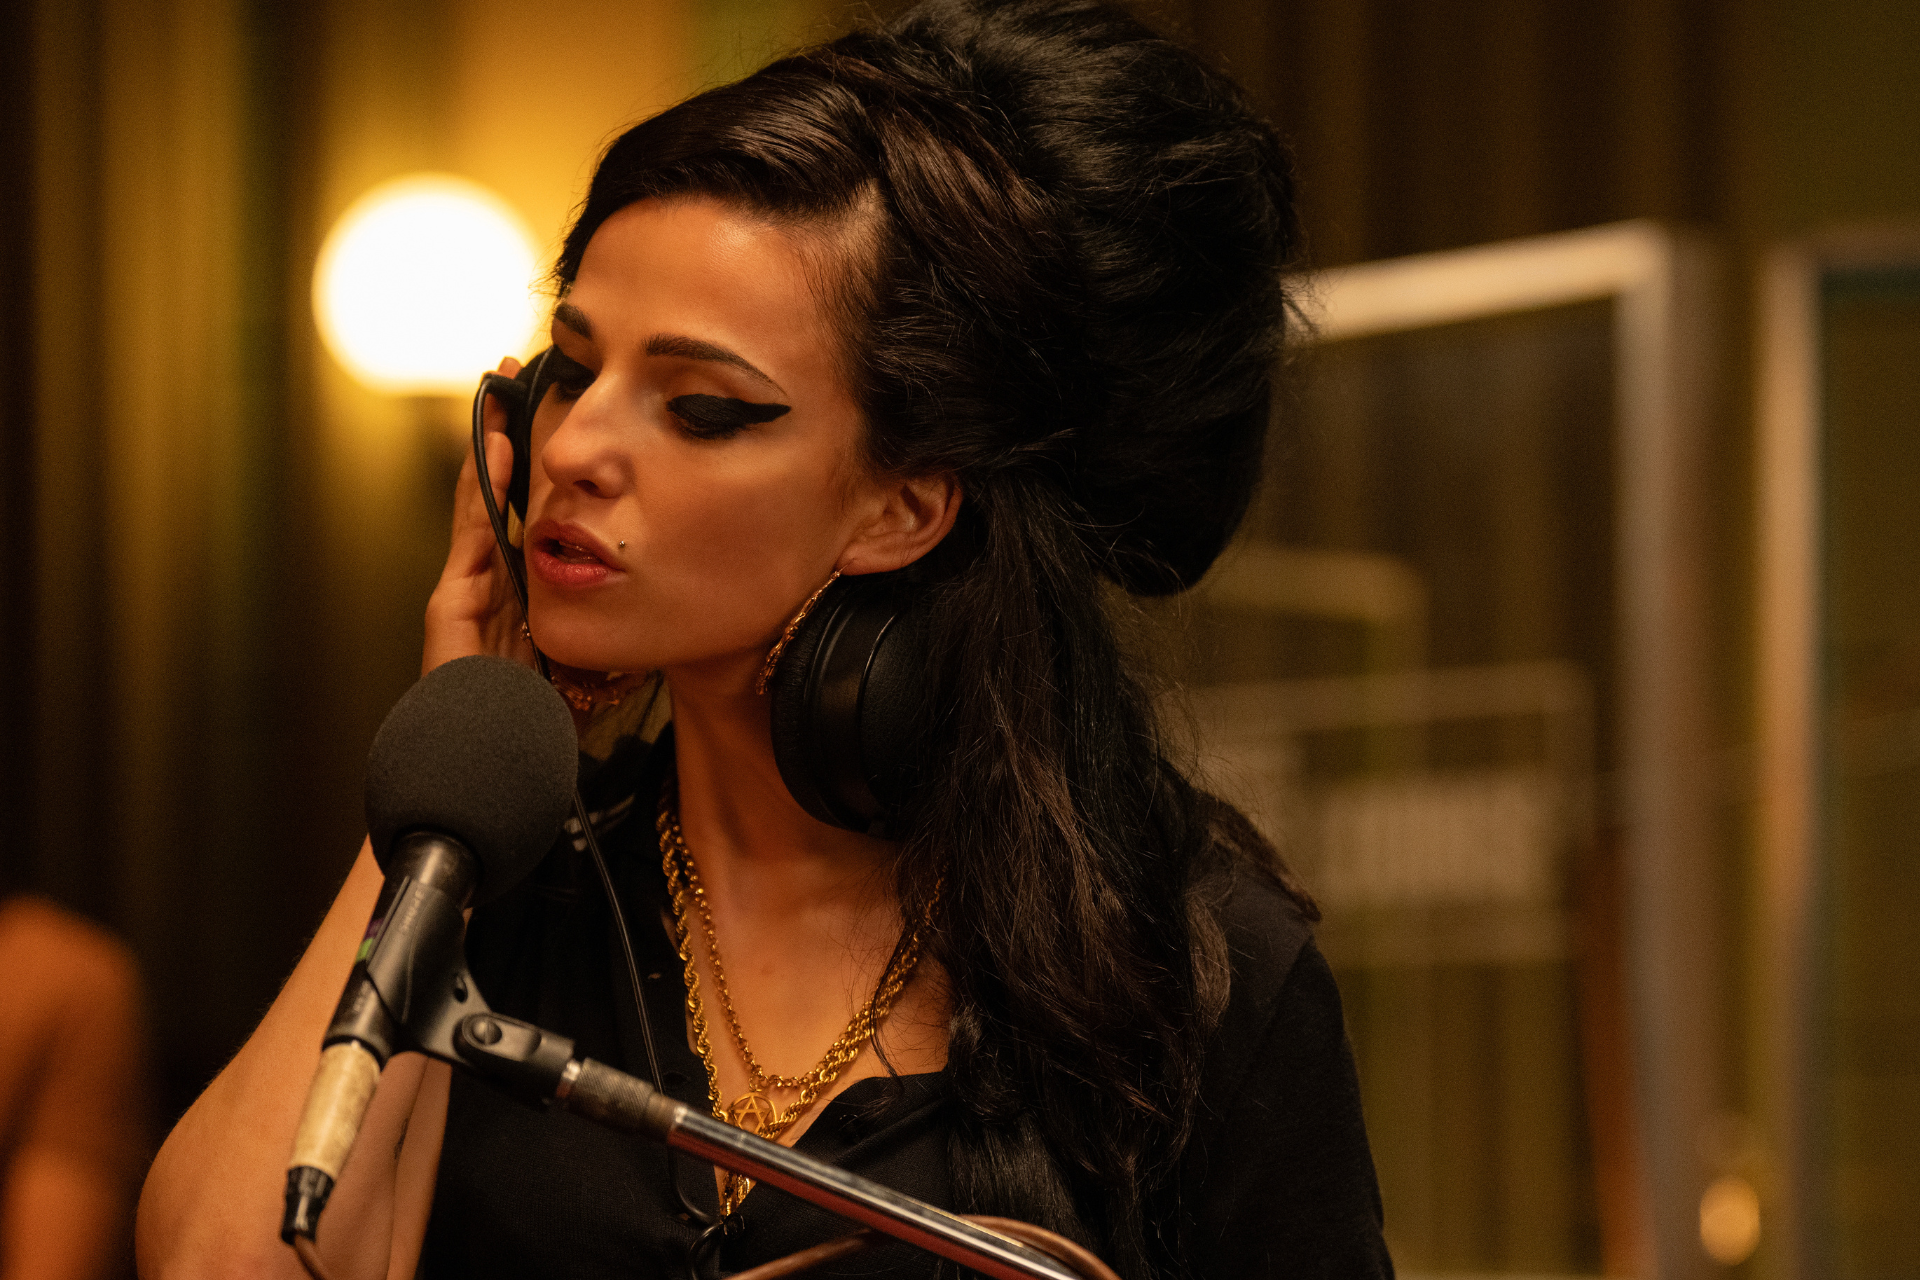 ‘Foi difícil cantar as músicas de Amy Winehouse’, diz intérprete de ‘Black to Black’